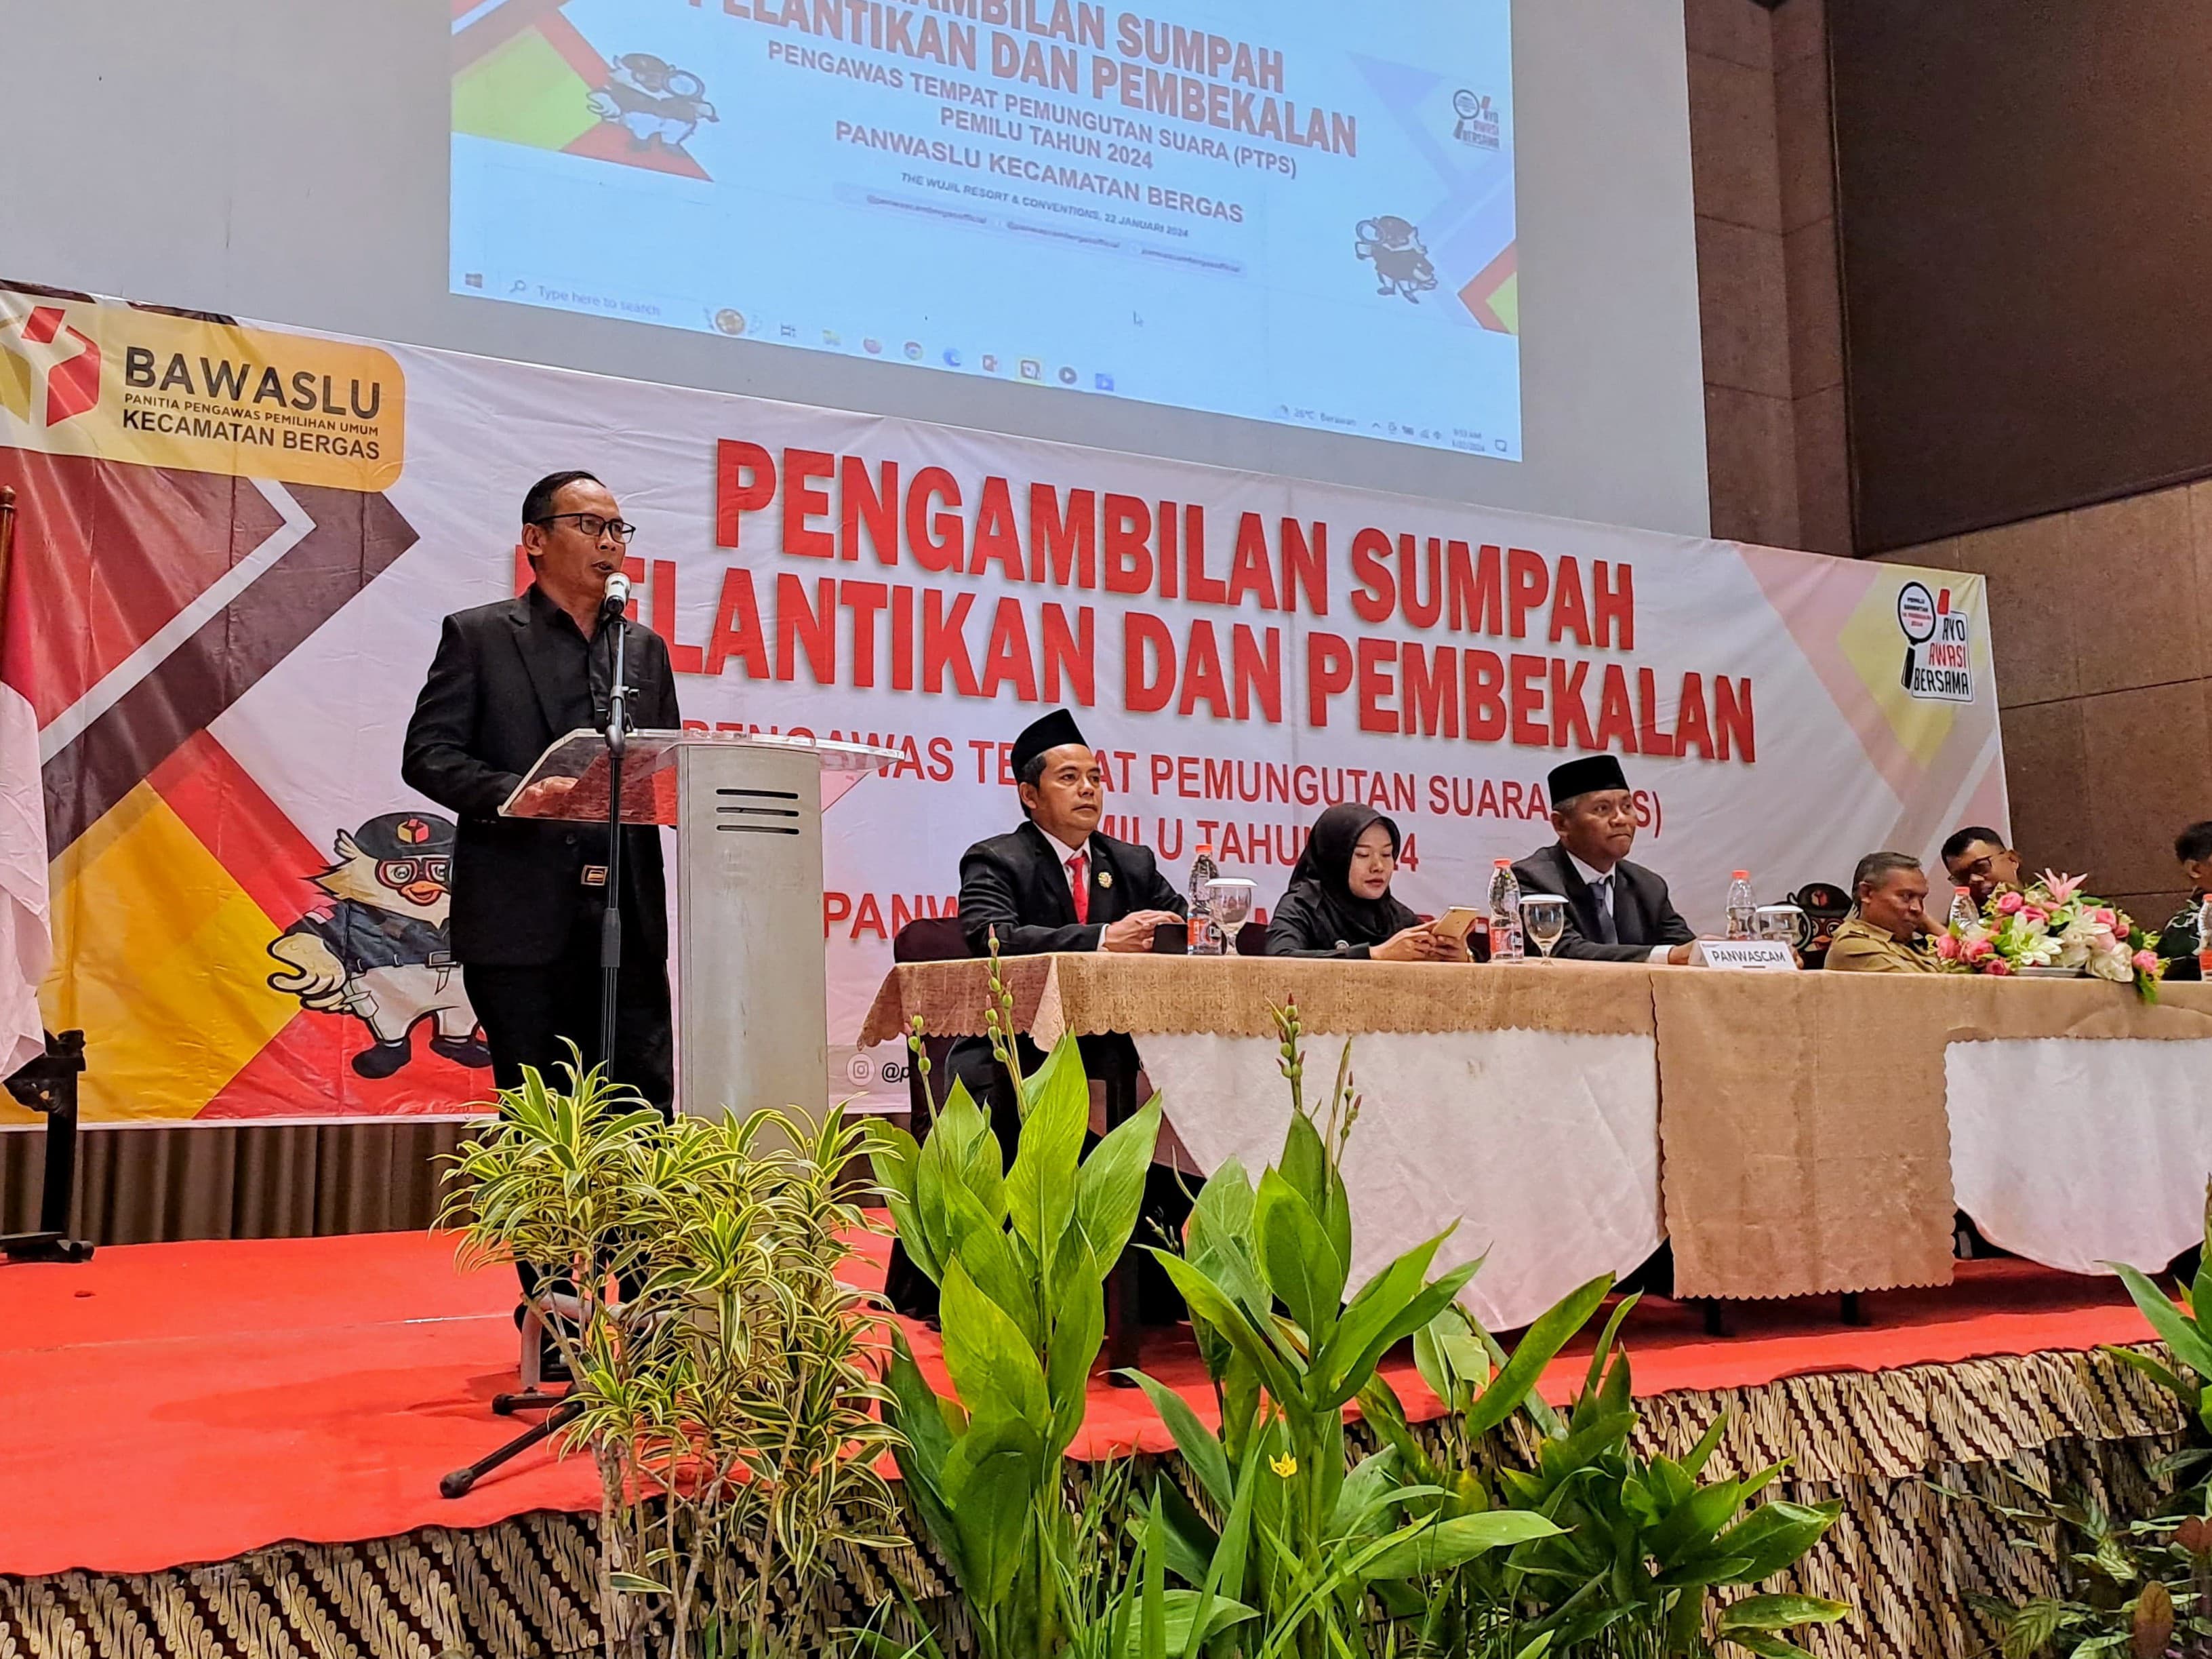 Ketua Bawaslu Kabupaten Semarang menyampaikan sambutan pada pelantikan dan pembekalan Pengawas TPS